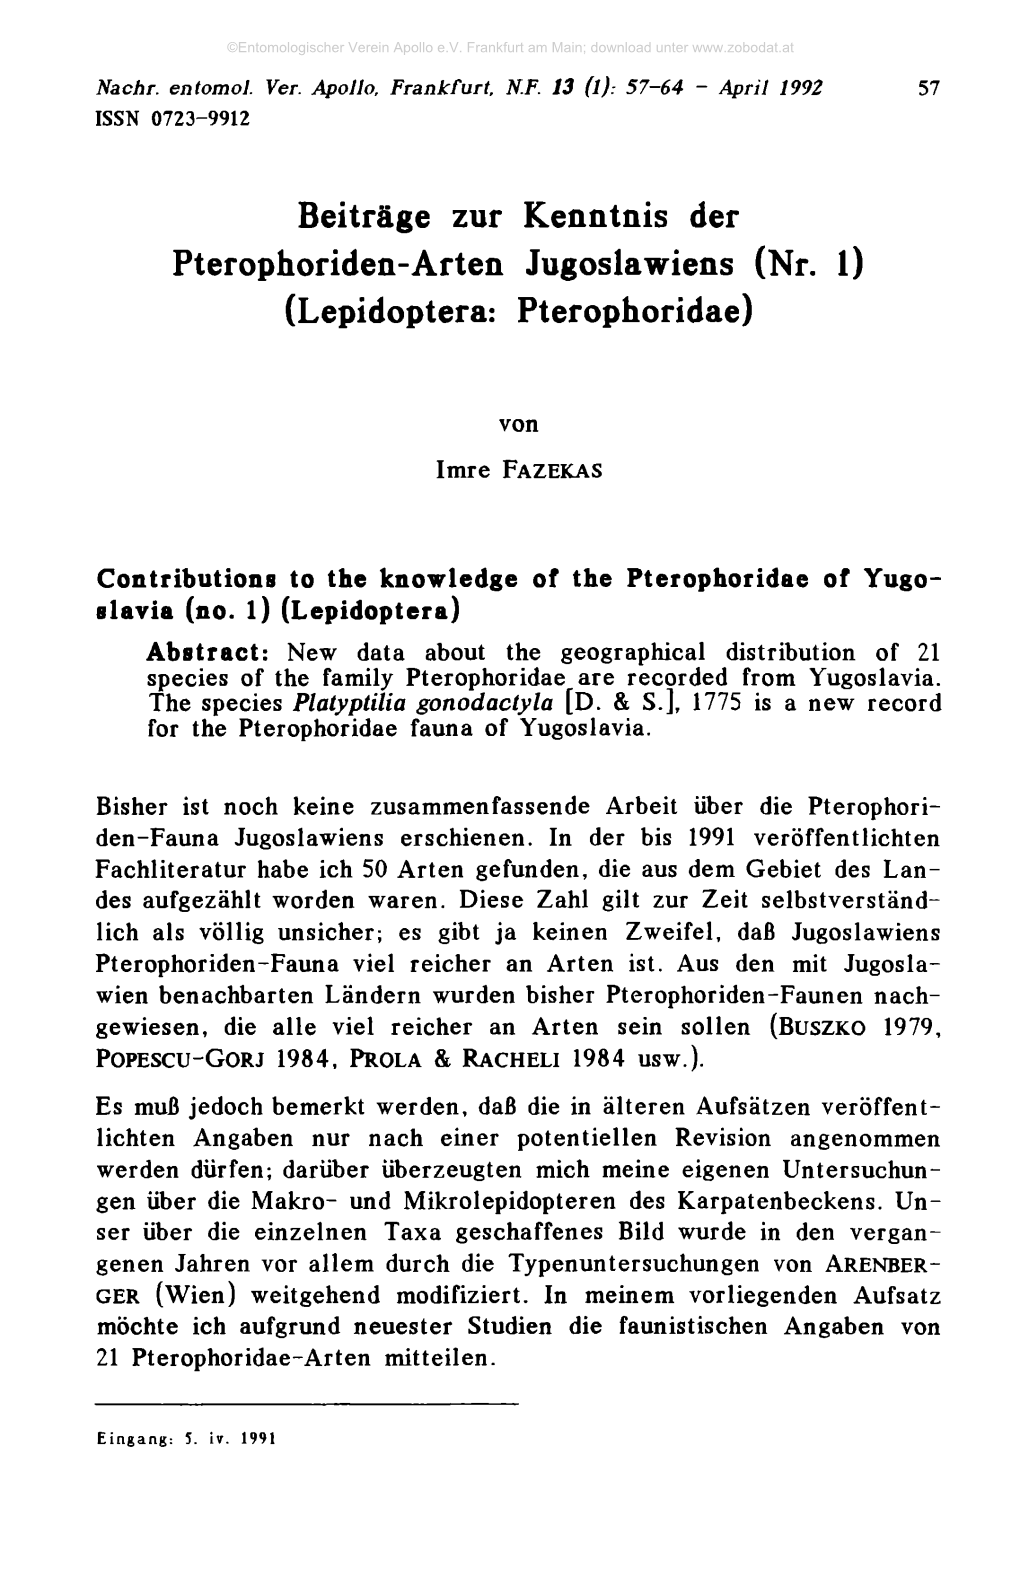 Beiträge Zur Kenntnis Der Pterophoriden-Arten Jugoslawiens (Nr